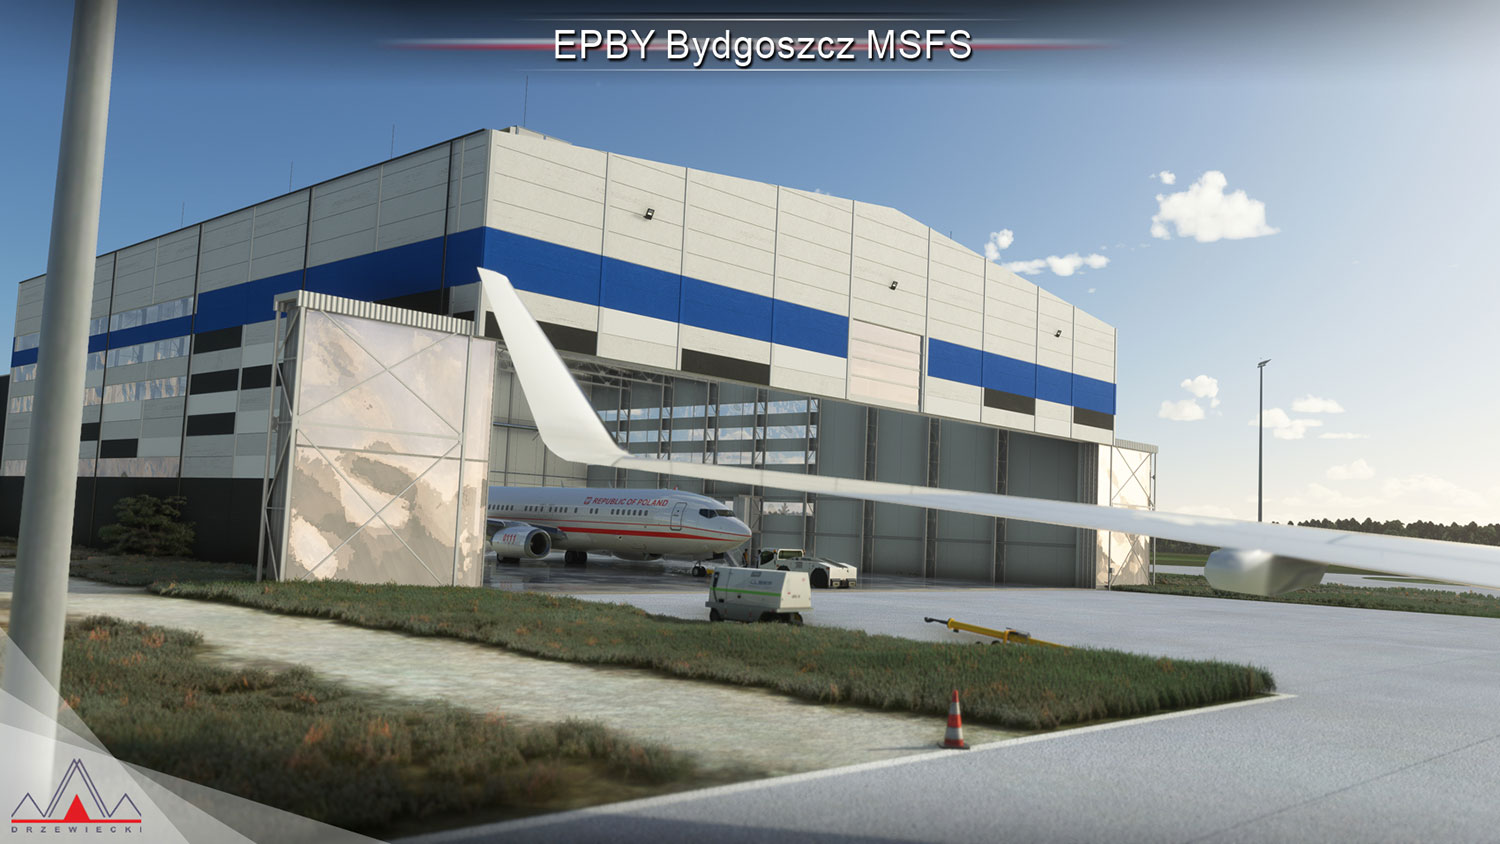 Drzewiecki Design - EPBY Bydgoszcz MSFS